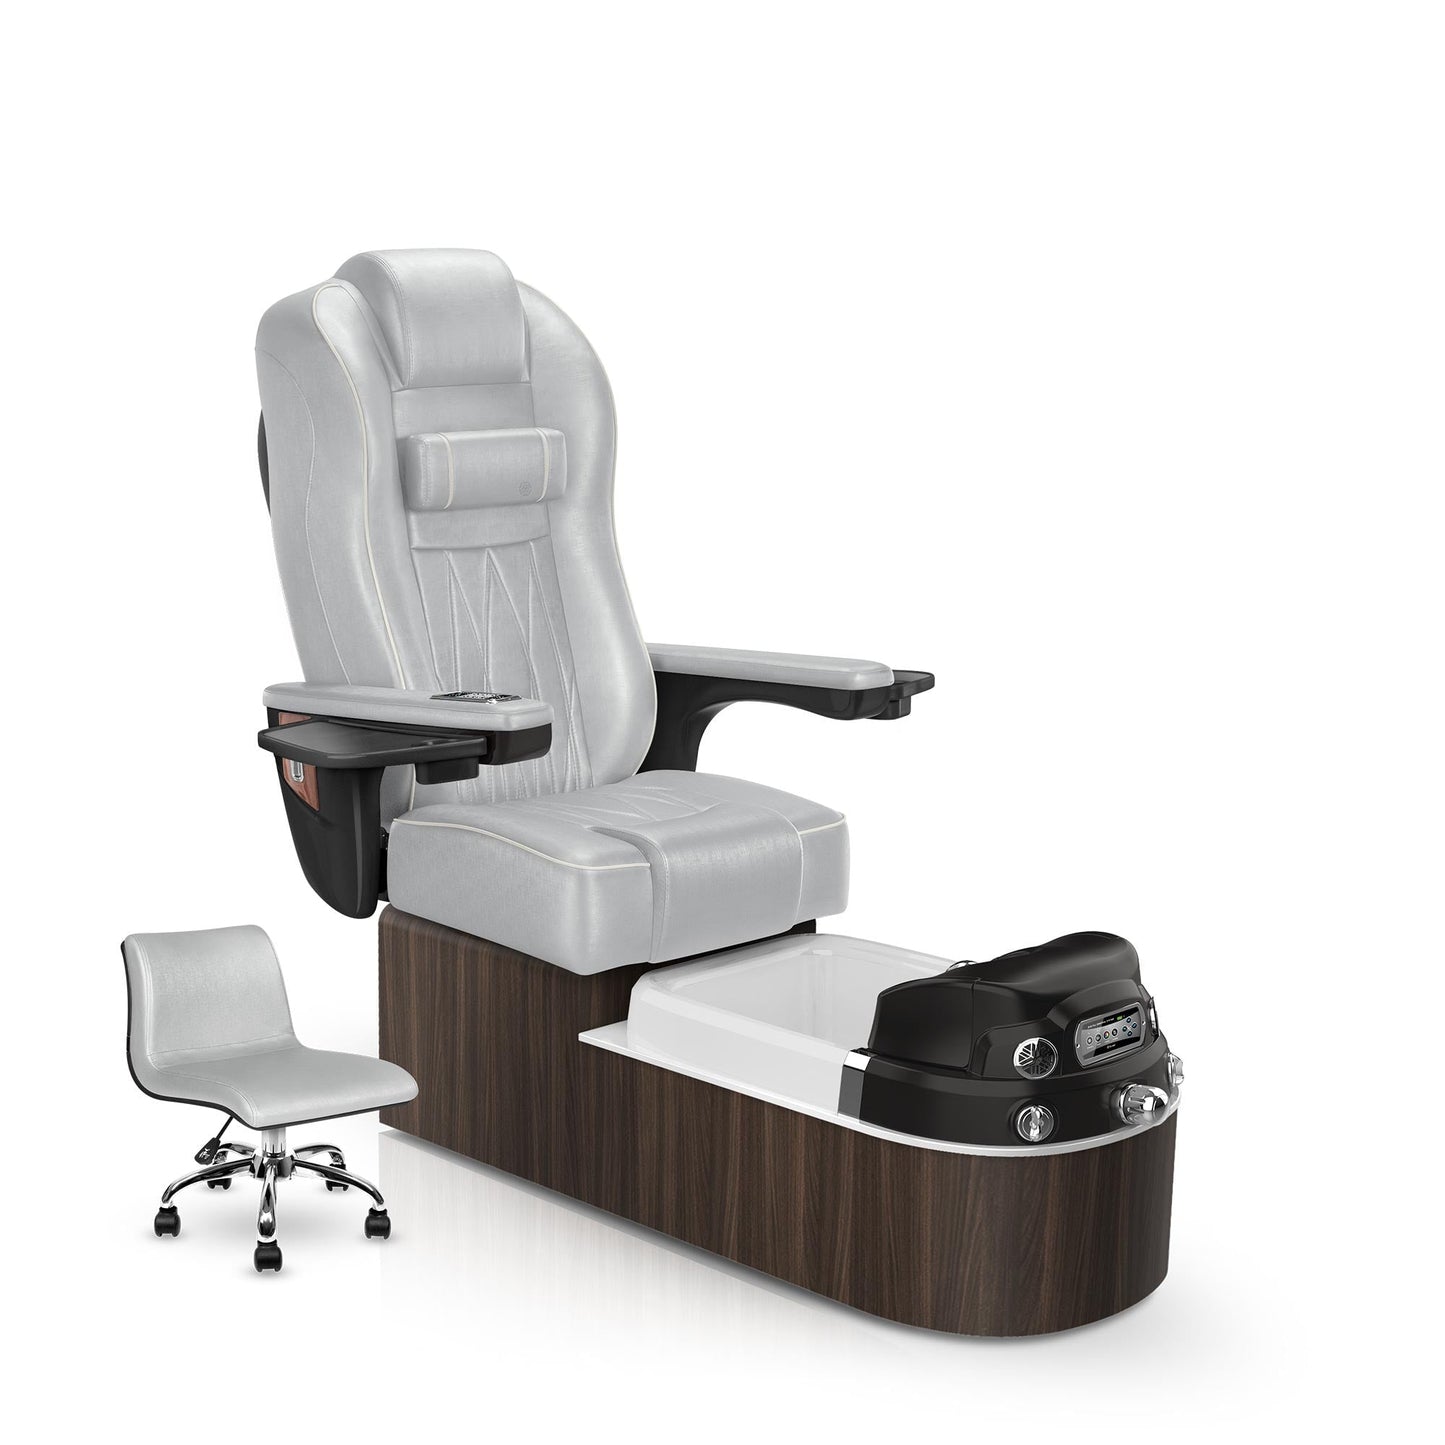 Lexor Envision pedicure chair platinum cushion and dark walnut base